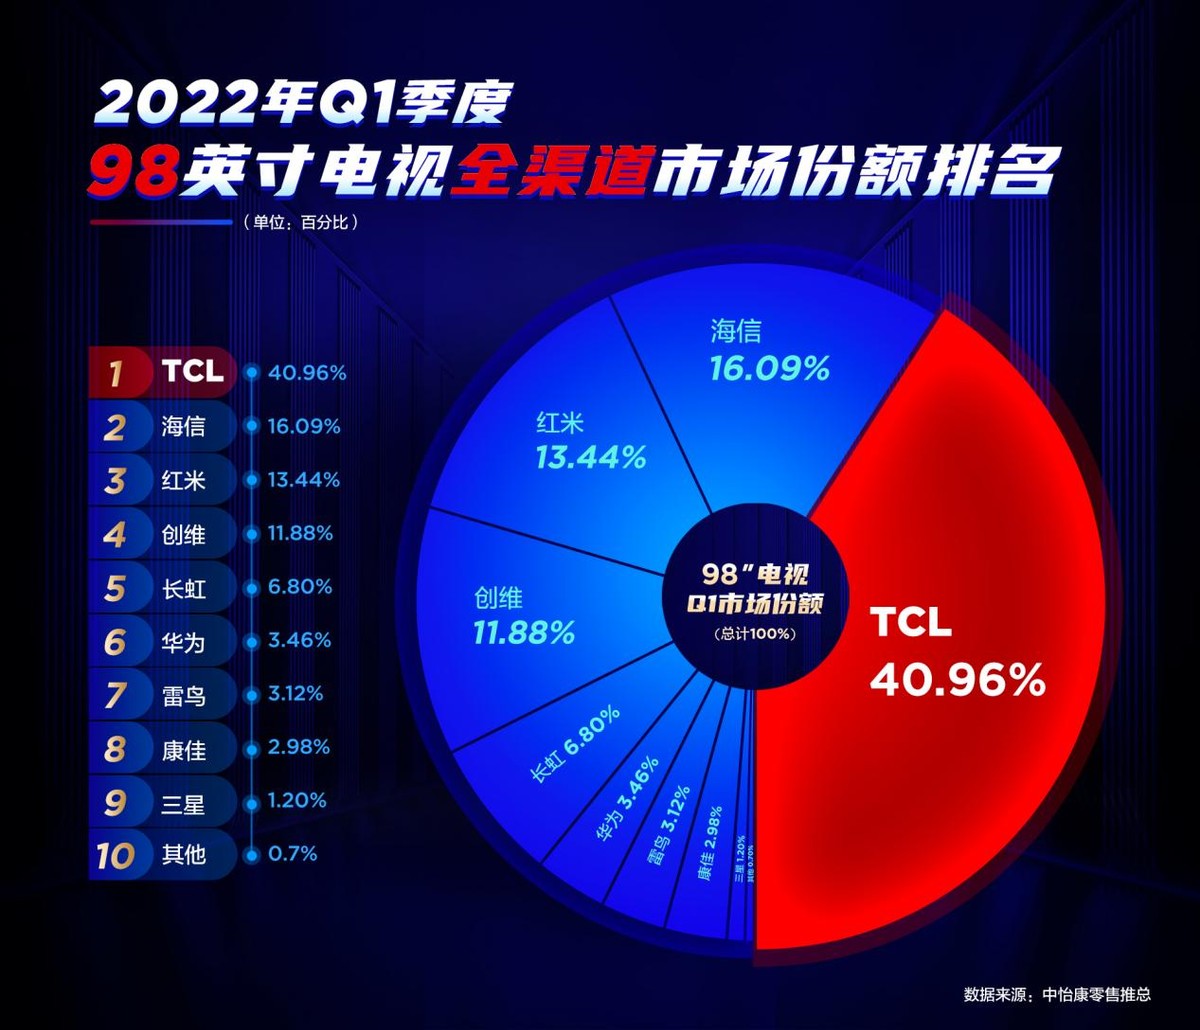 TCL|40.96%市场份额占比排名第一，TCL持续引航98超大屏电视发展方向！